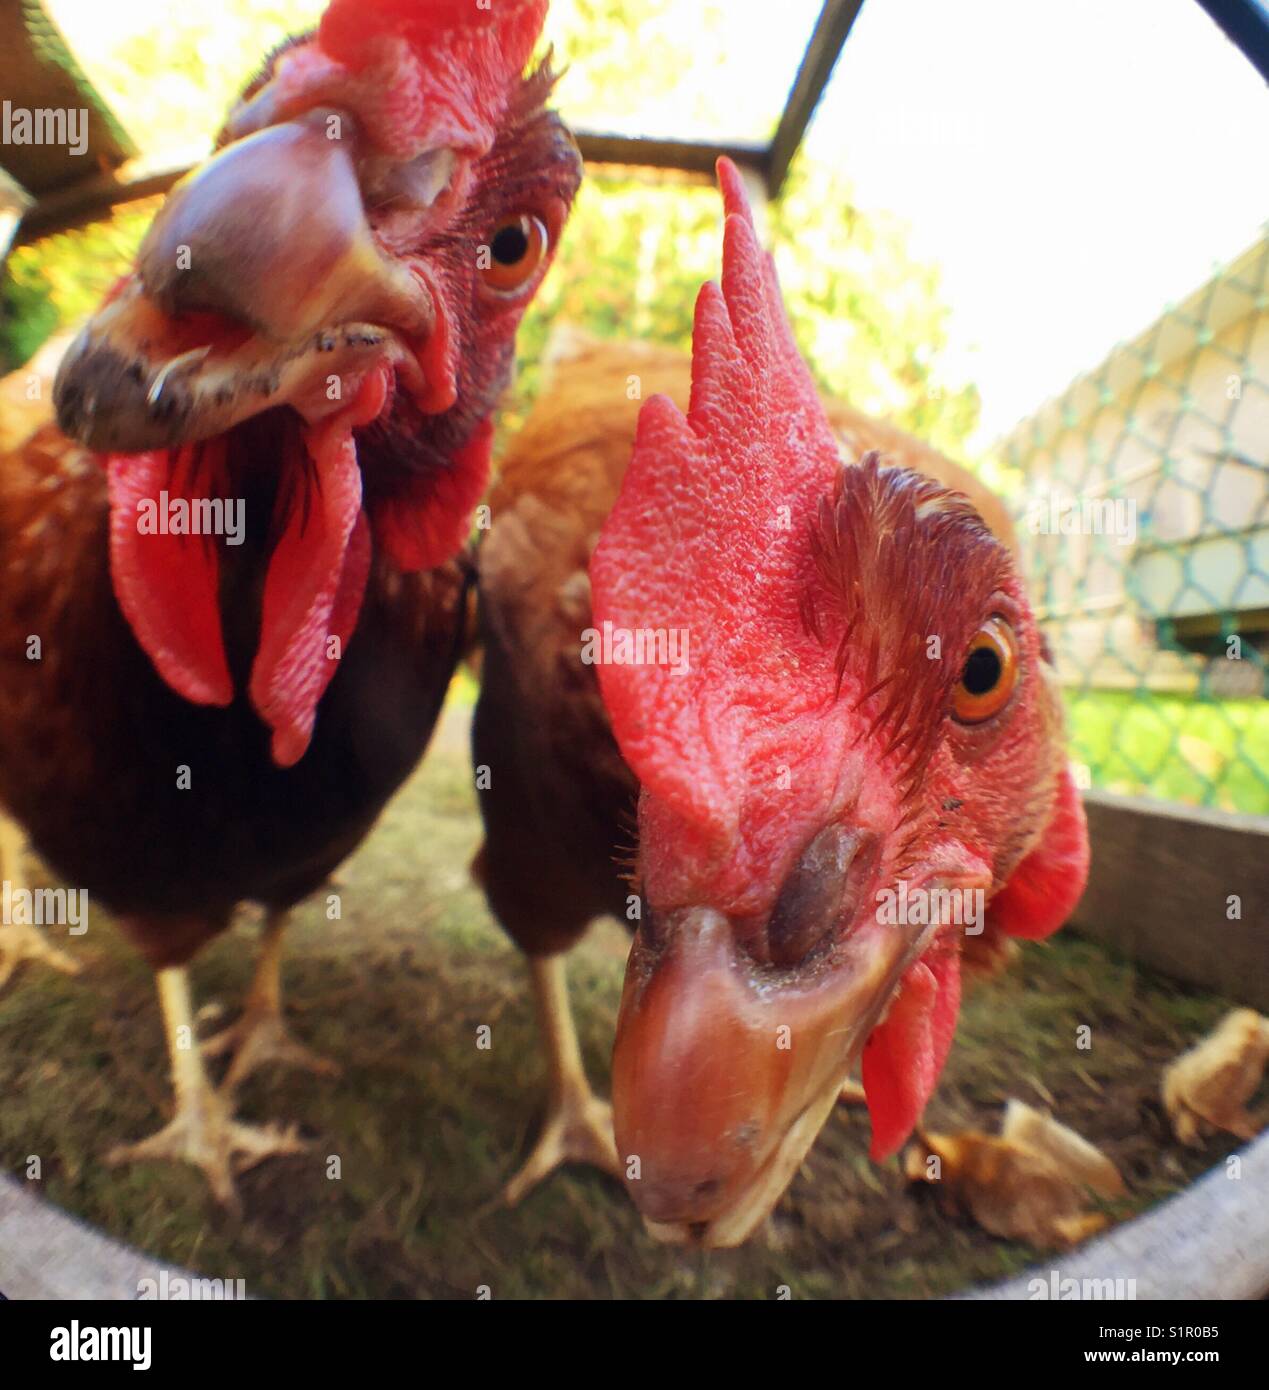 Primo piano di due Rhode Island red facce di pollo controllo del fotografo Foto Stock